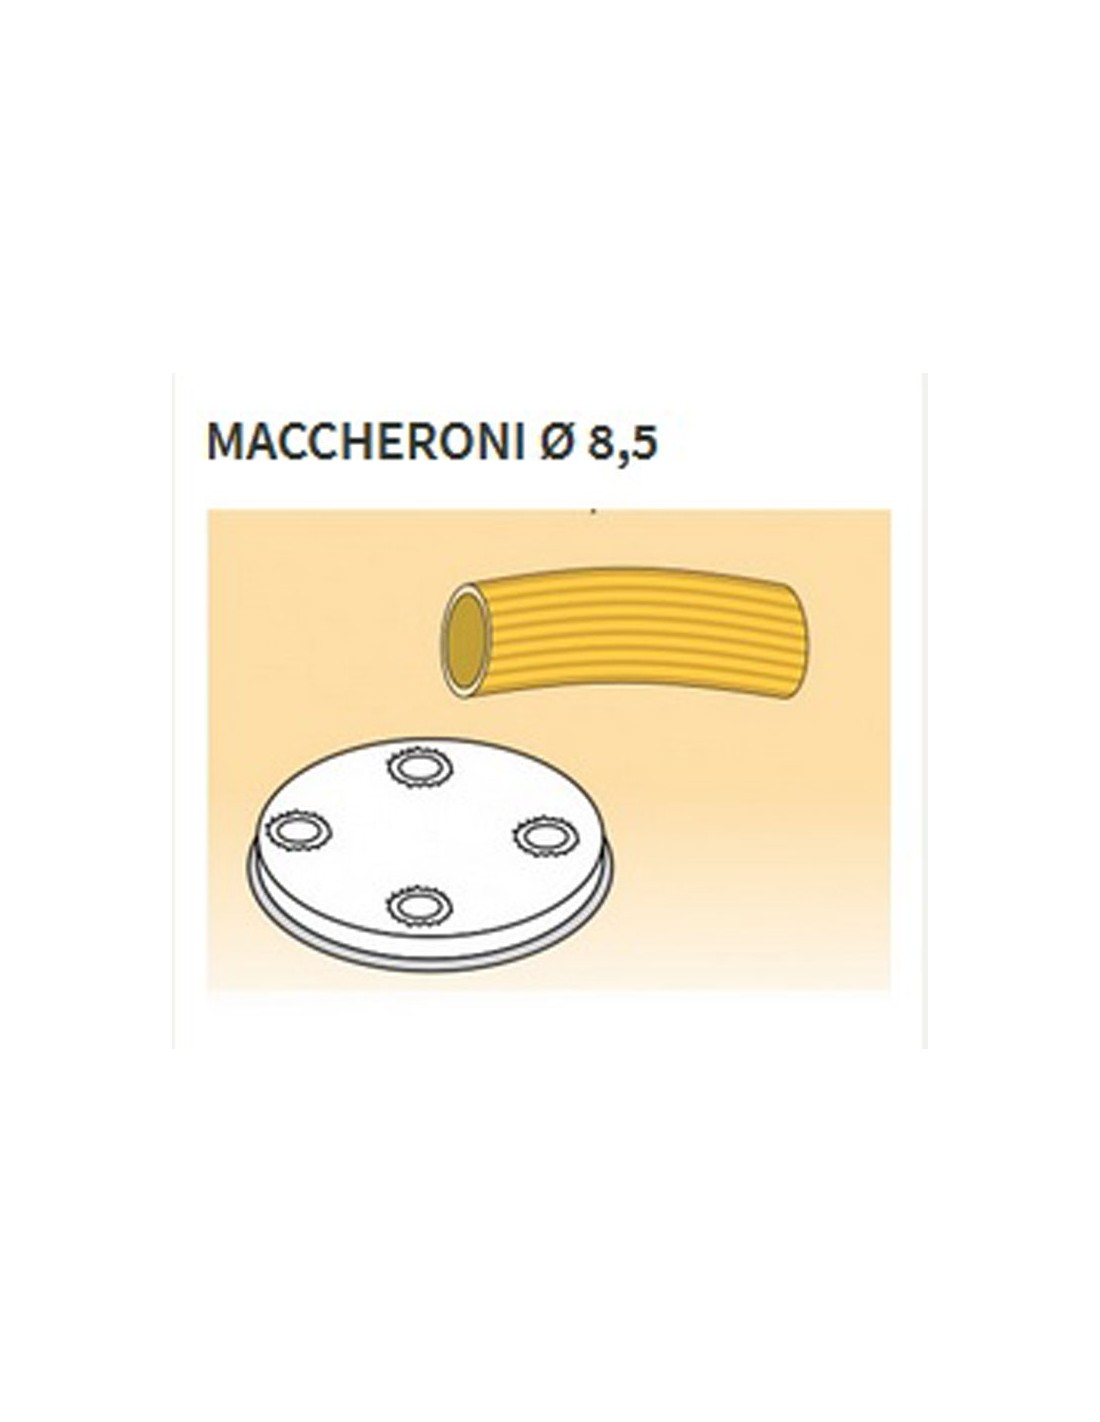 Trafile formati vari in lega ottone - Bronzo - Per macchina pasta fresca modello MPF8N - Maccheroni Ø mm 8.5